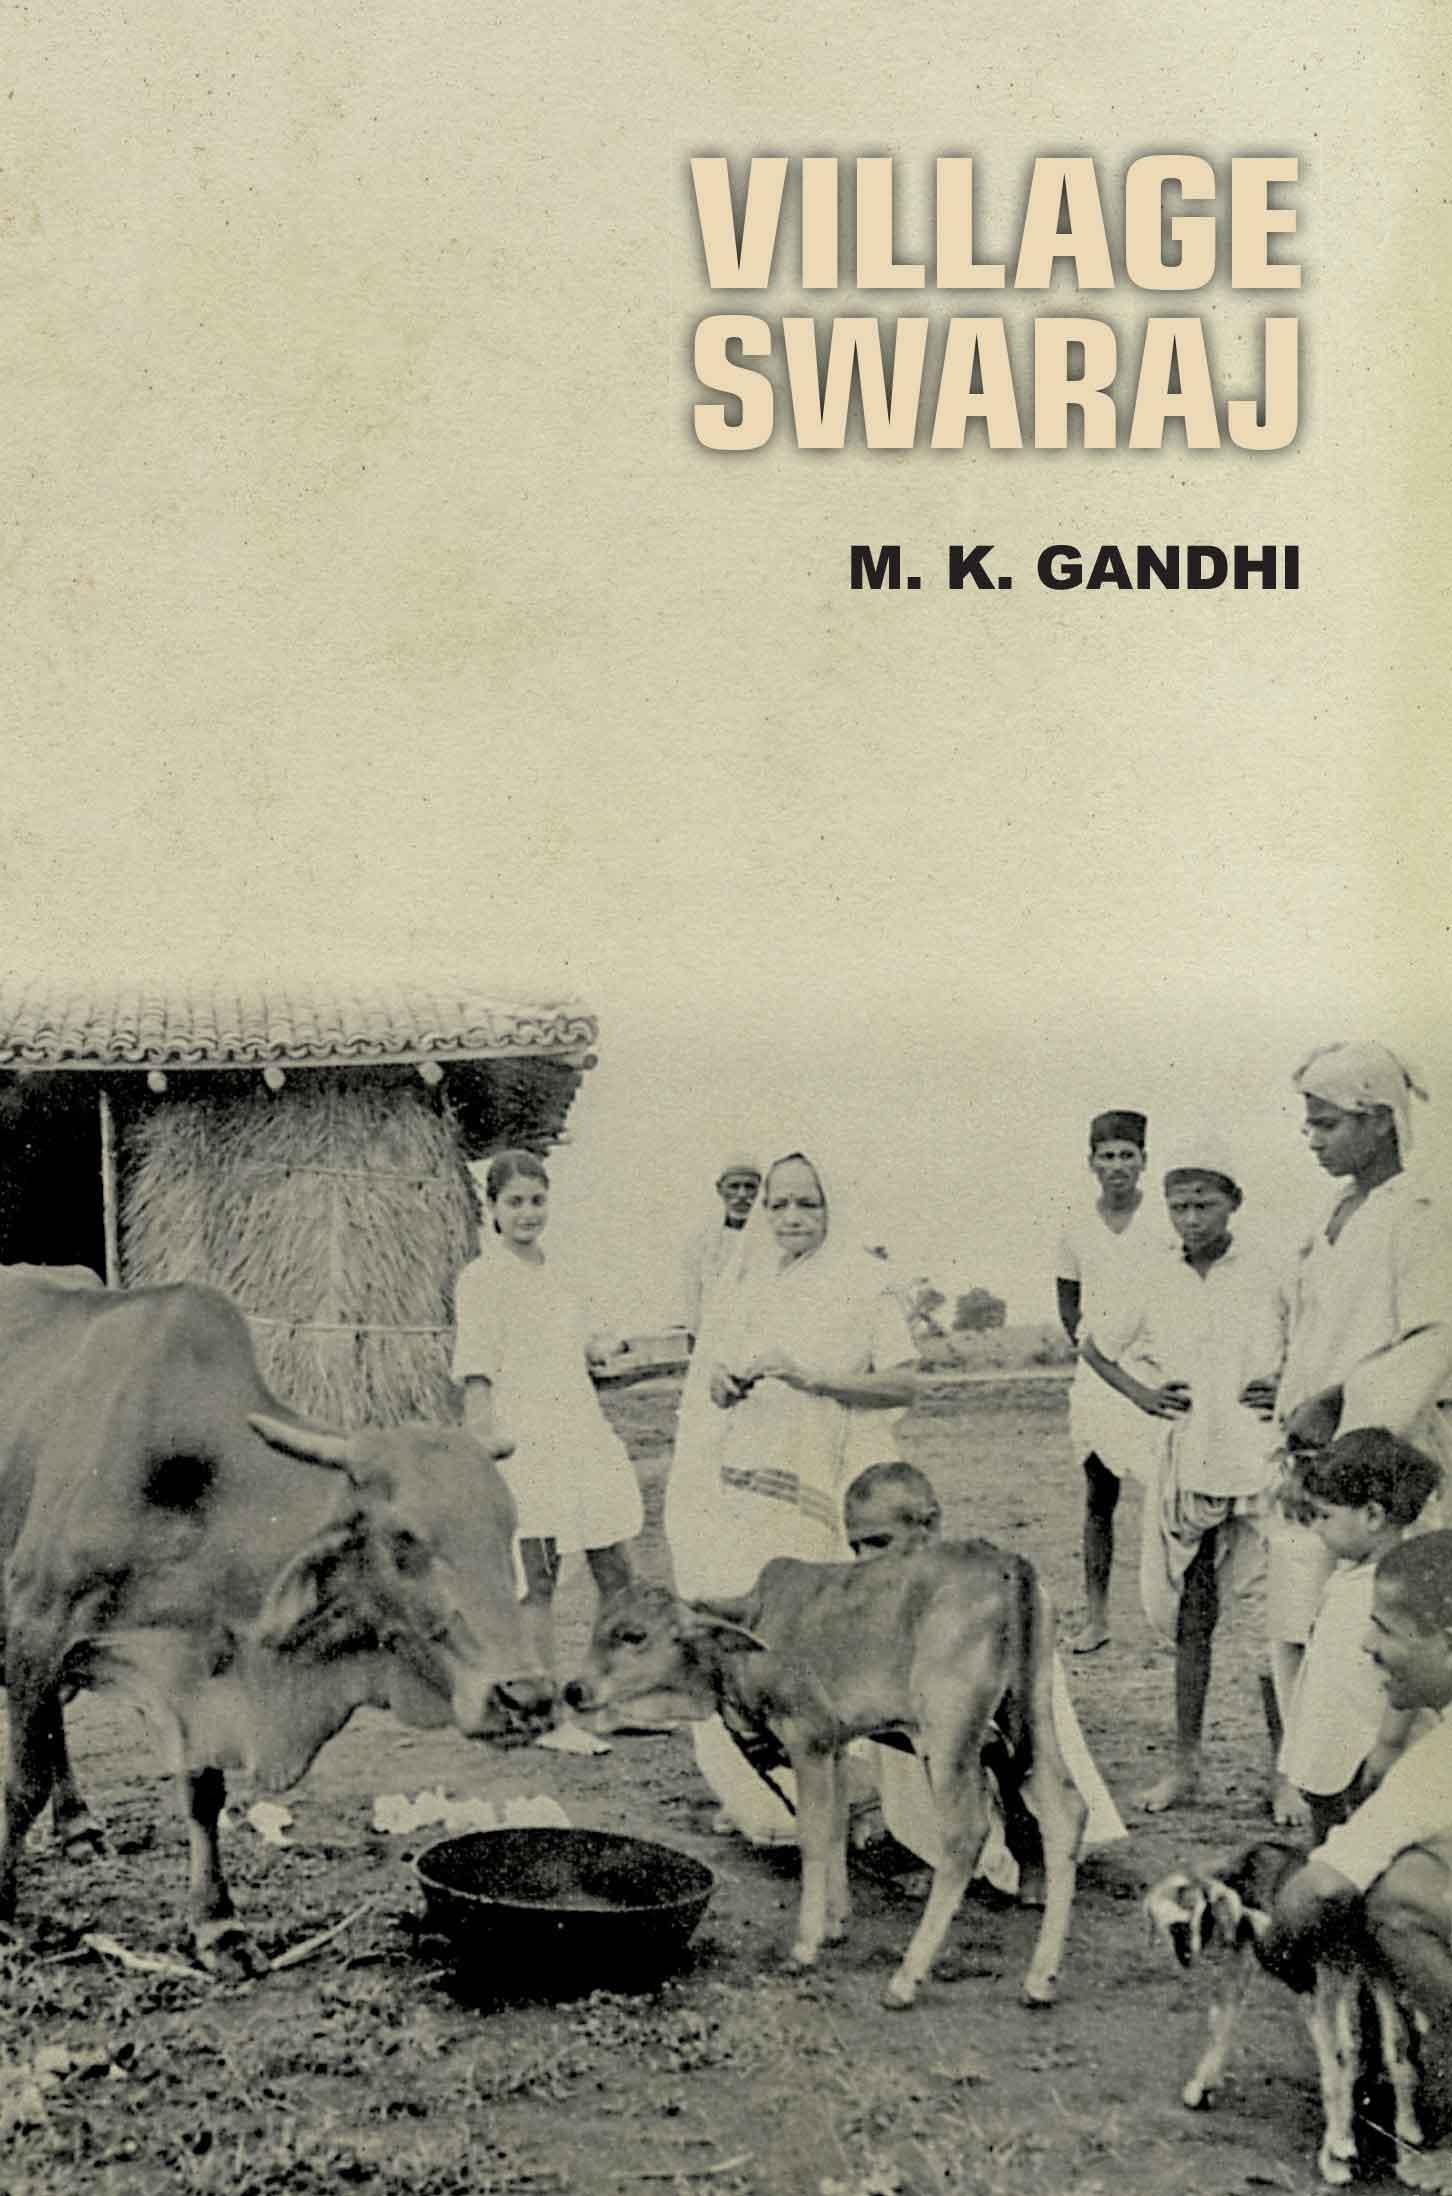 Village Swaraj book cover